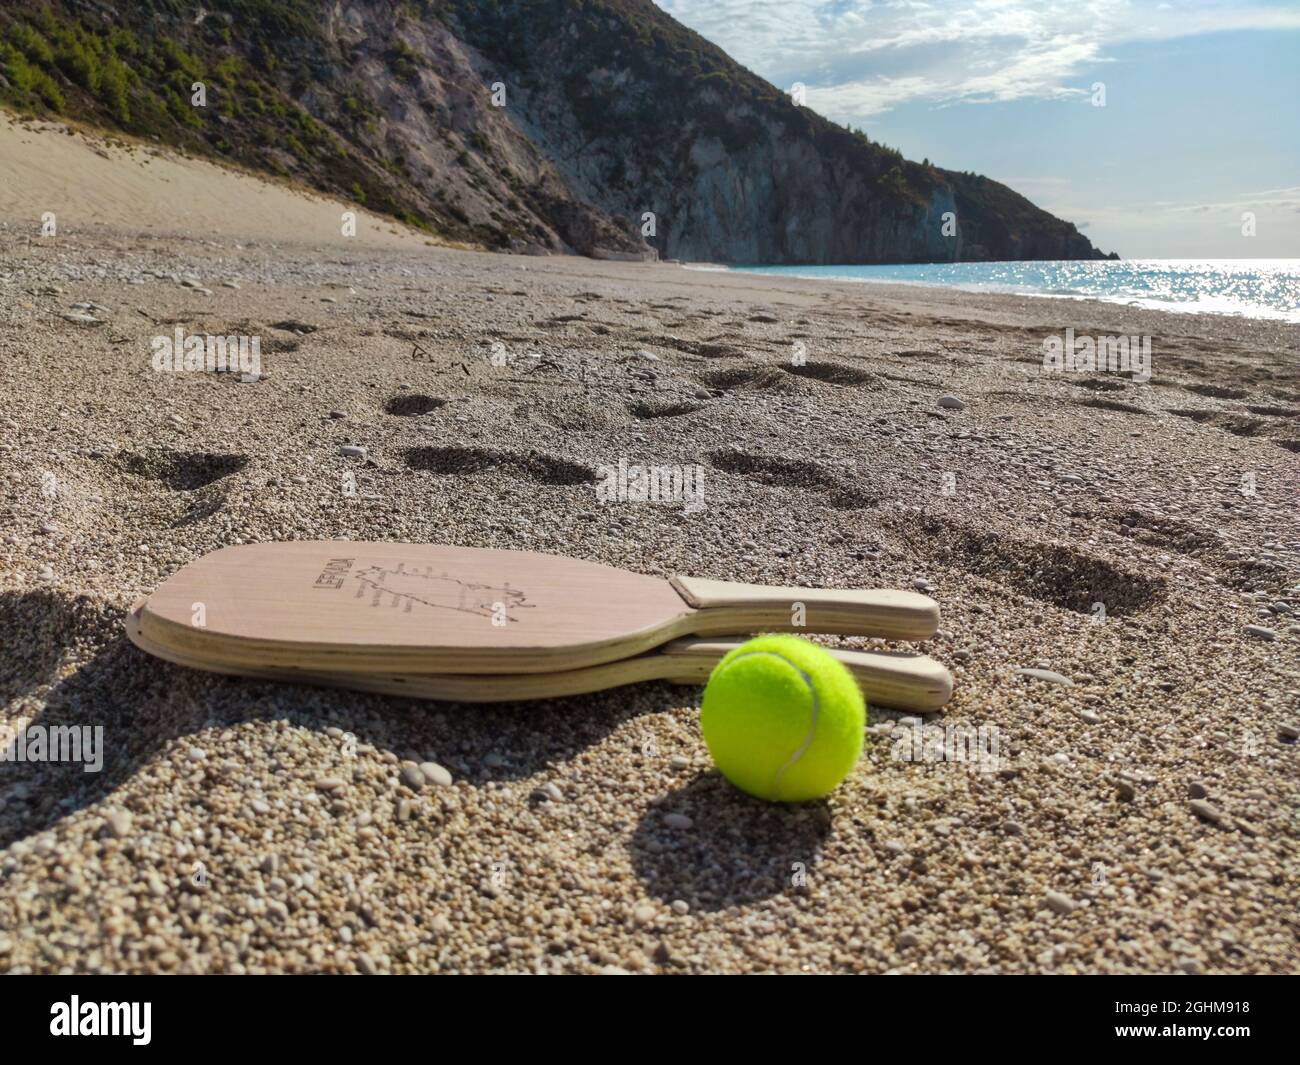 Matkot griechisches Paddle Beach Tennis Spiel mit Ball und Holzschlägern mit Karte der Insel Lefkada, Mylos Strand. Sportausrüstung am Sandstrand in Griechenland Stockfoto